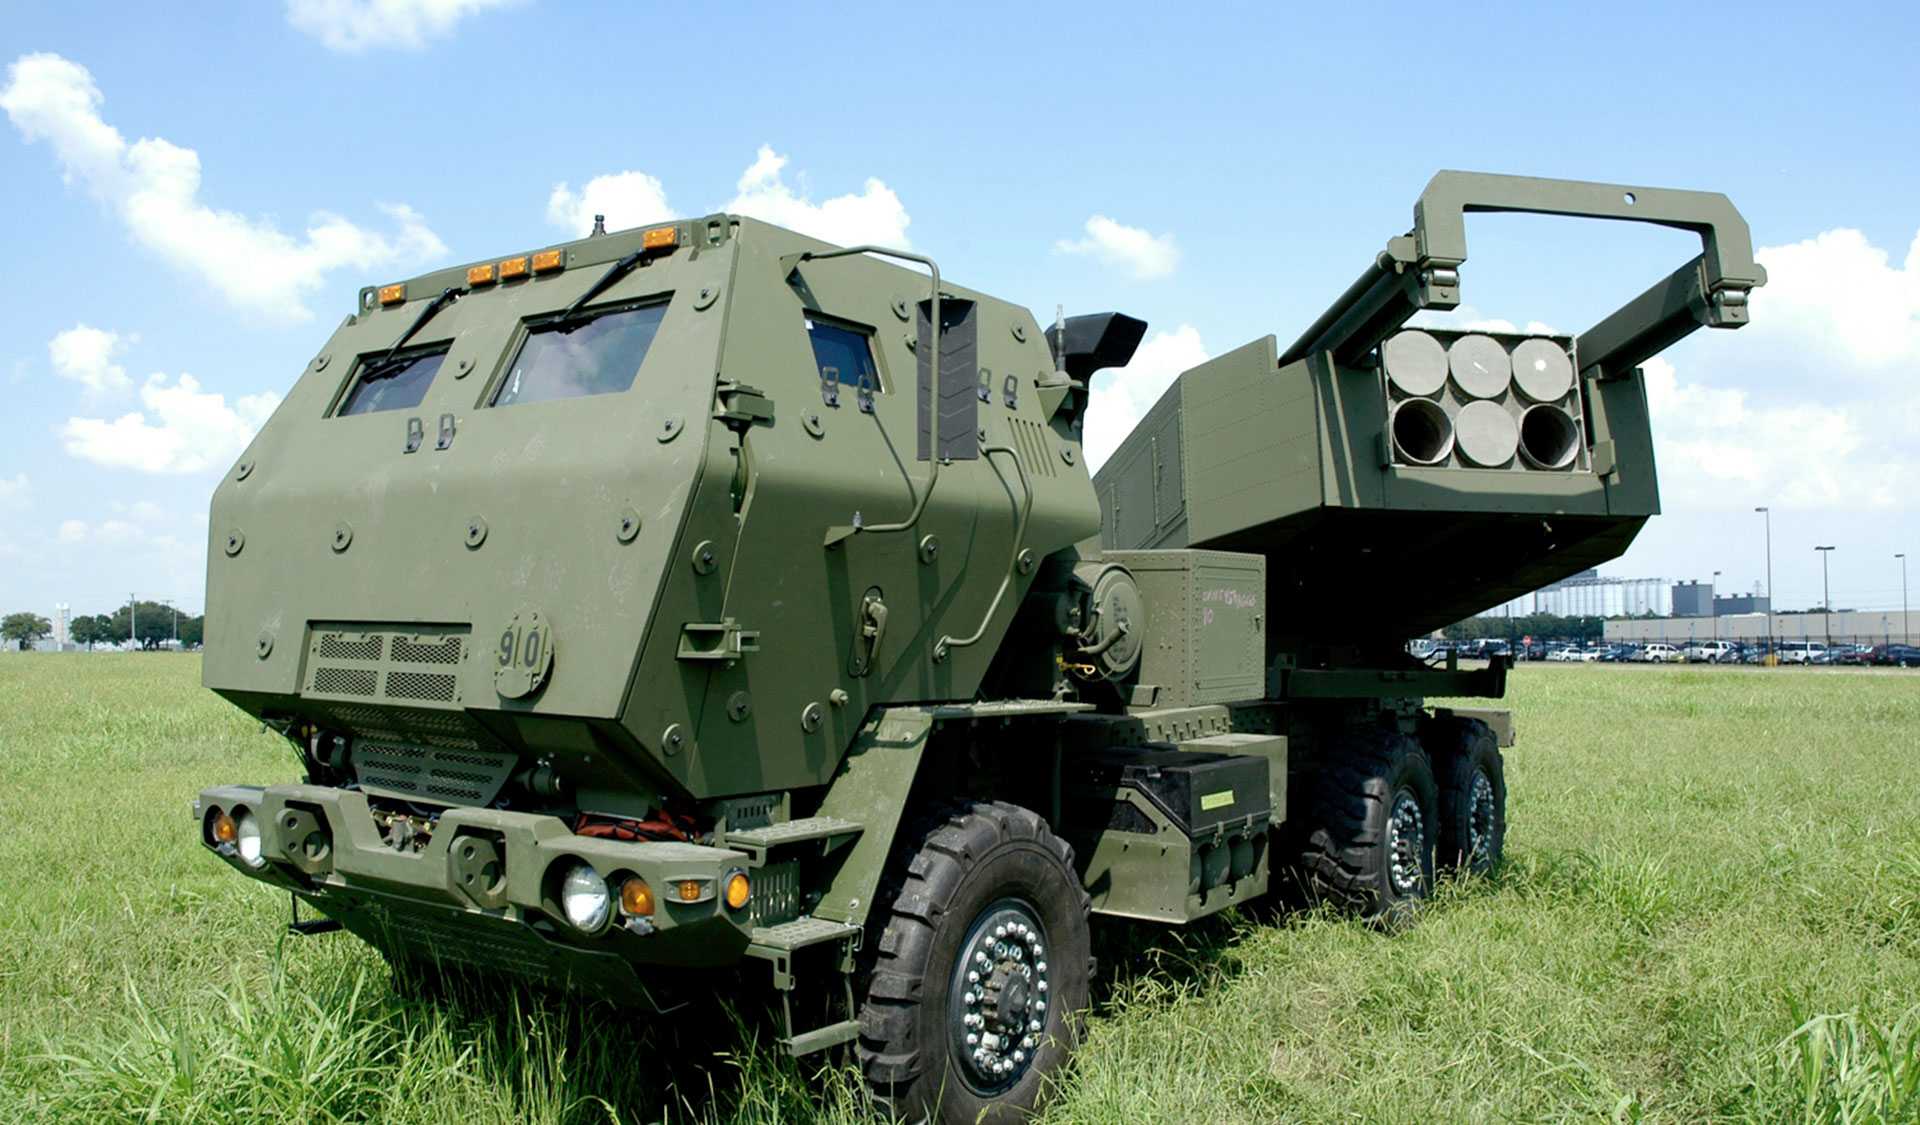 ԱՄՆ-ը Ուկրաինային նոր փաթեթով կմատակարարի նաև HIMARS բազմակի հրթիռային համակարգեր